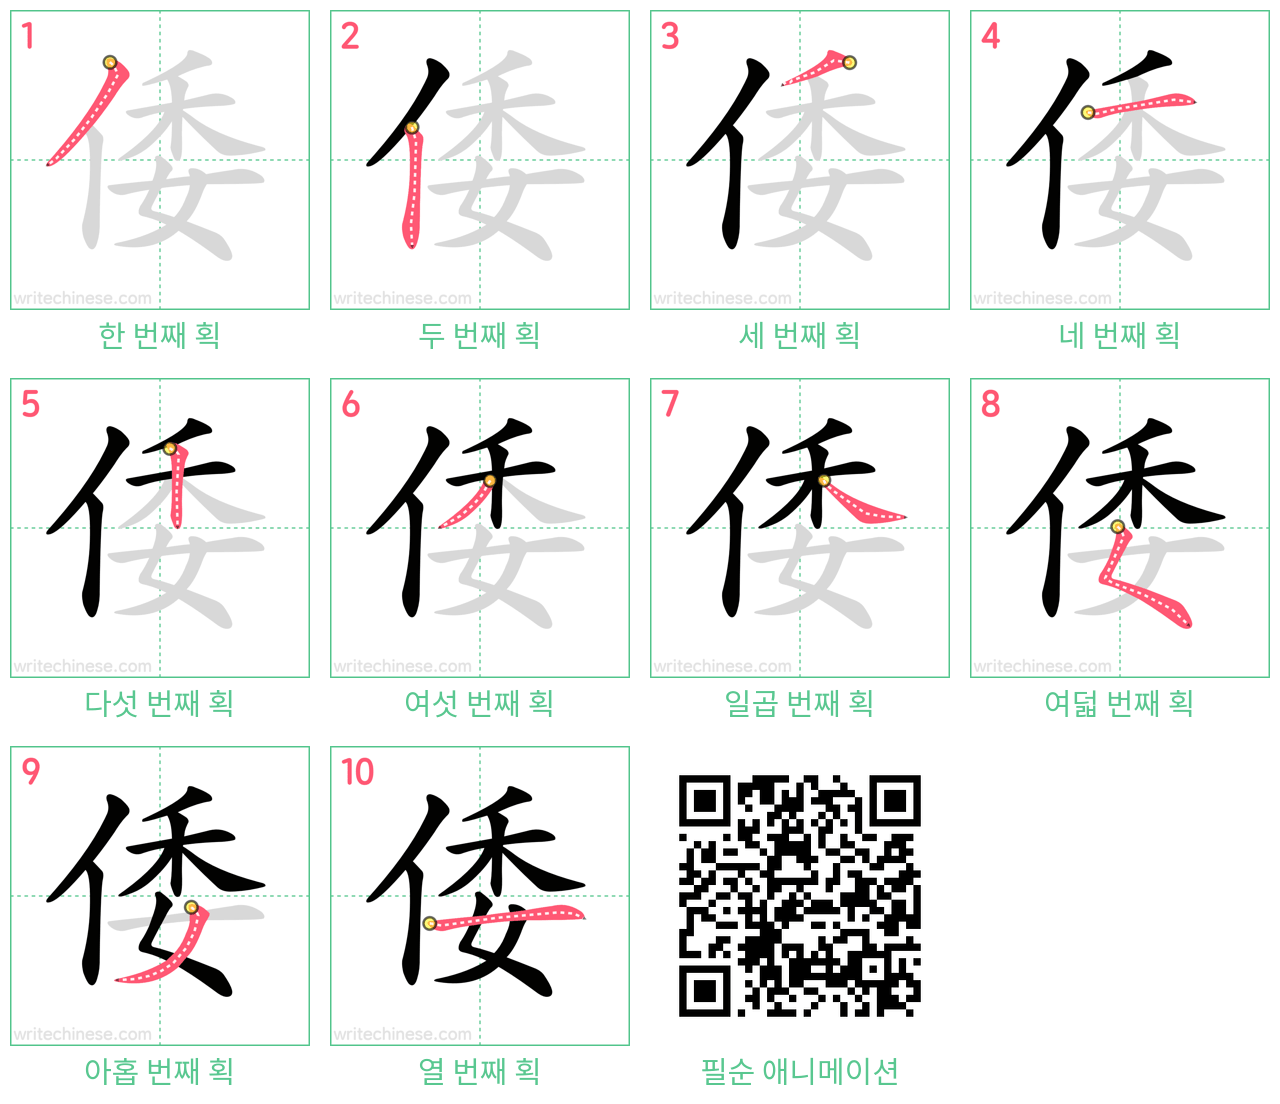 倭 step-by-step stroke order diagrams